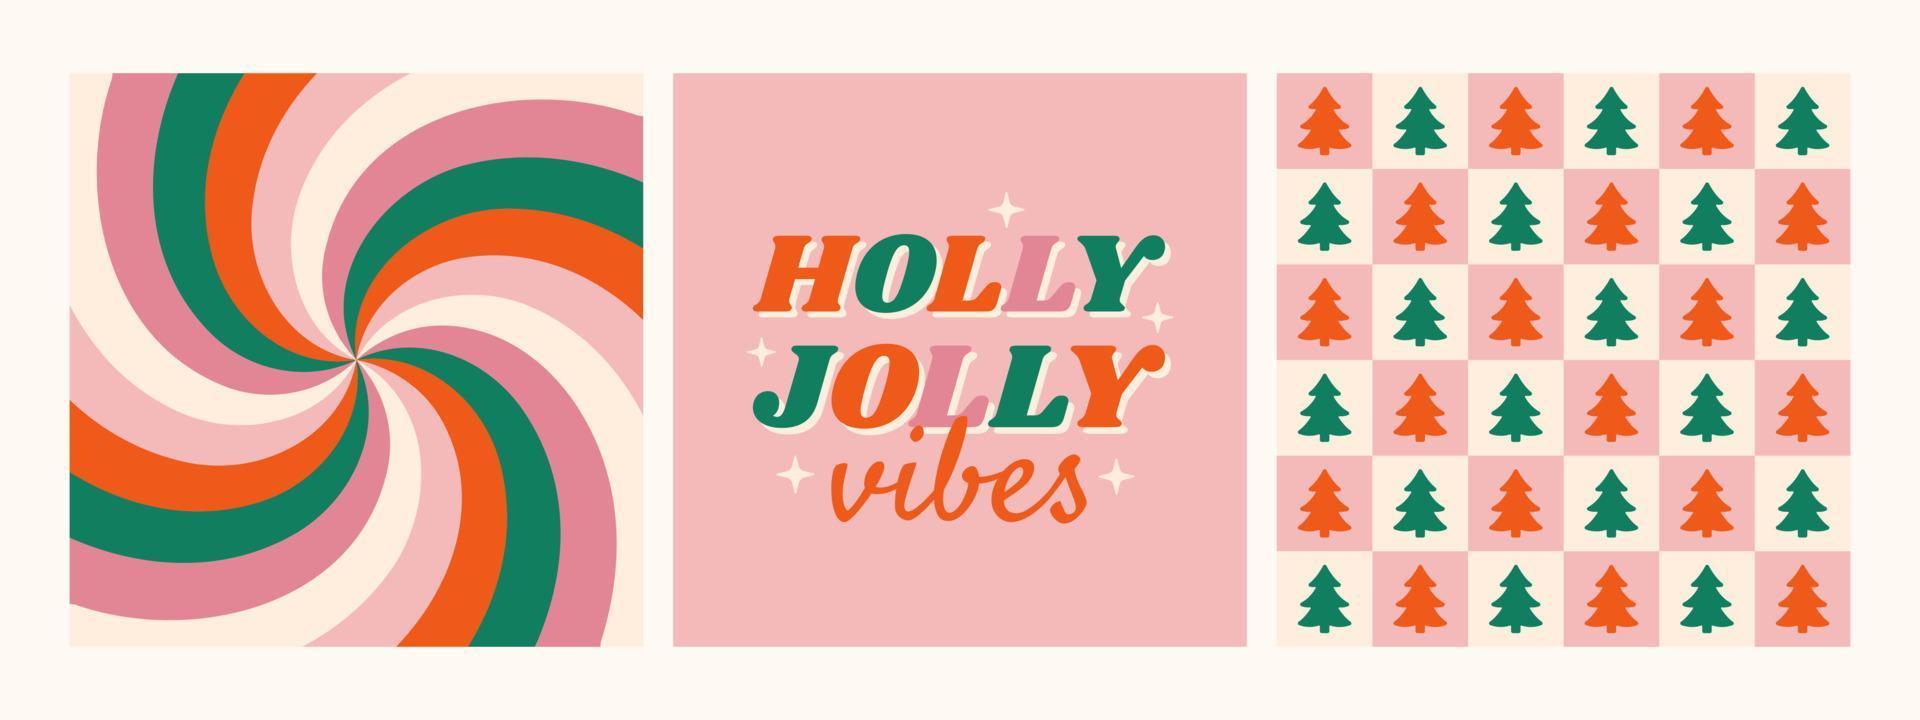 weihnachten hippie retro 70er hintergrund sammlung. Holly Jolly Vibes Phrase mit Strudel und karierten Tapeten. vektor